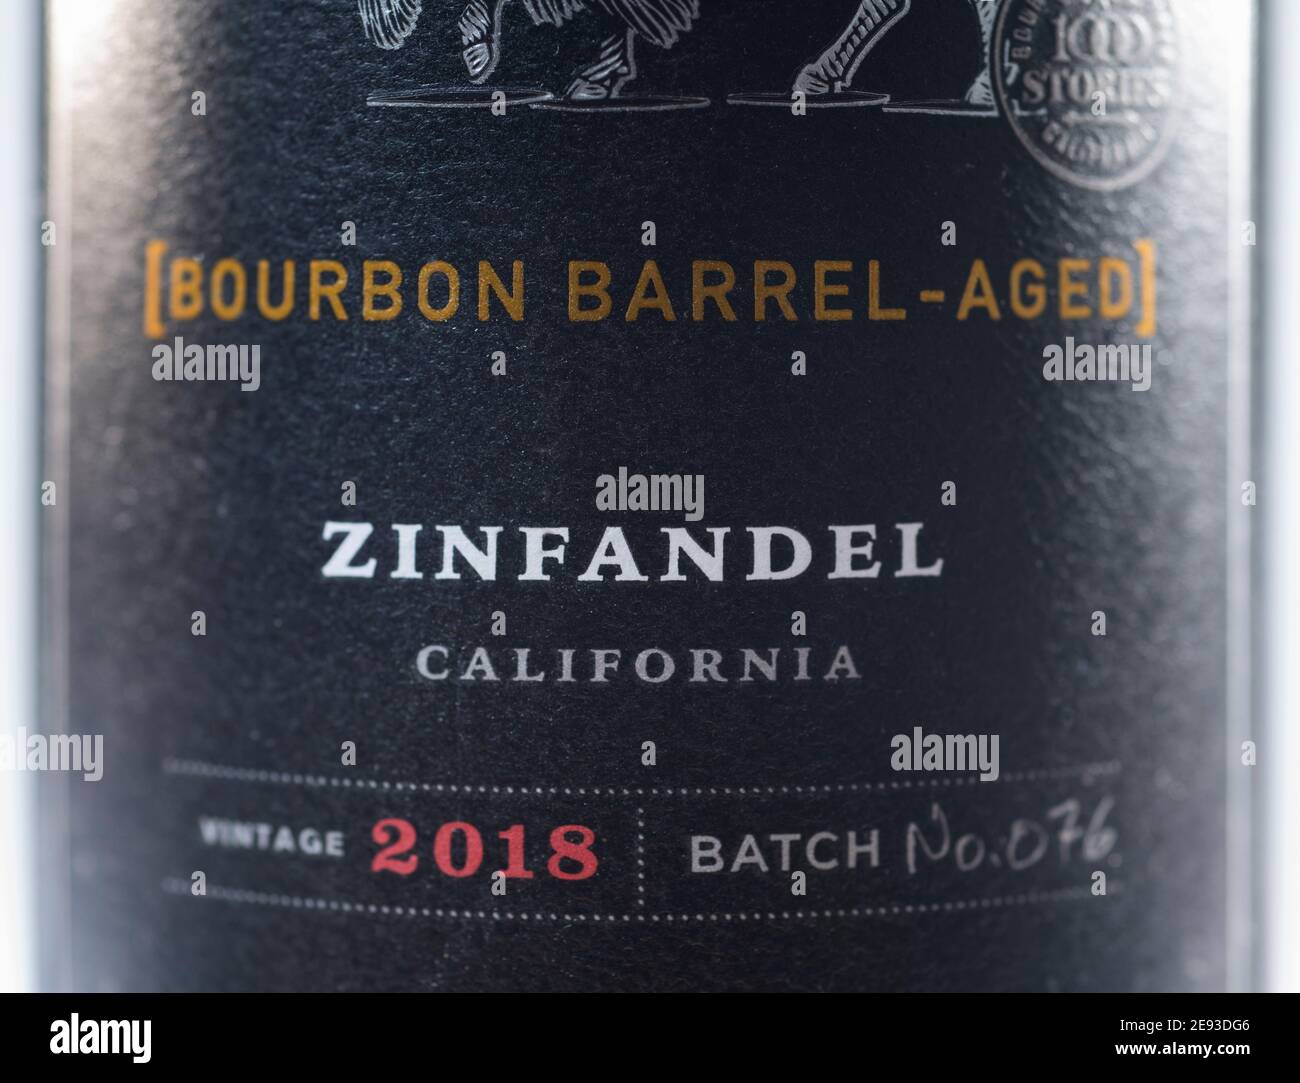 California Zinfandel 2018 Bourbon Barrel vino invecchiato closeup etichetta Foto Stock